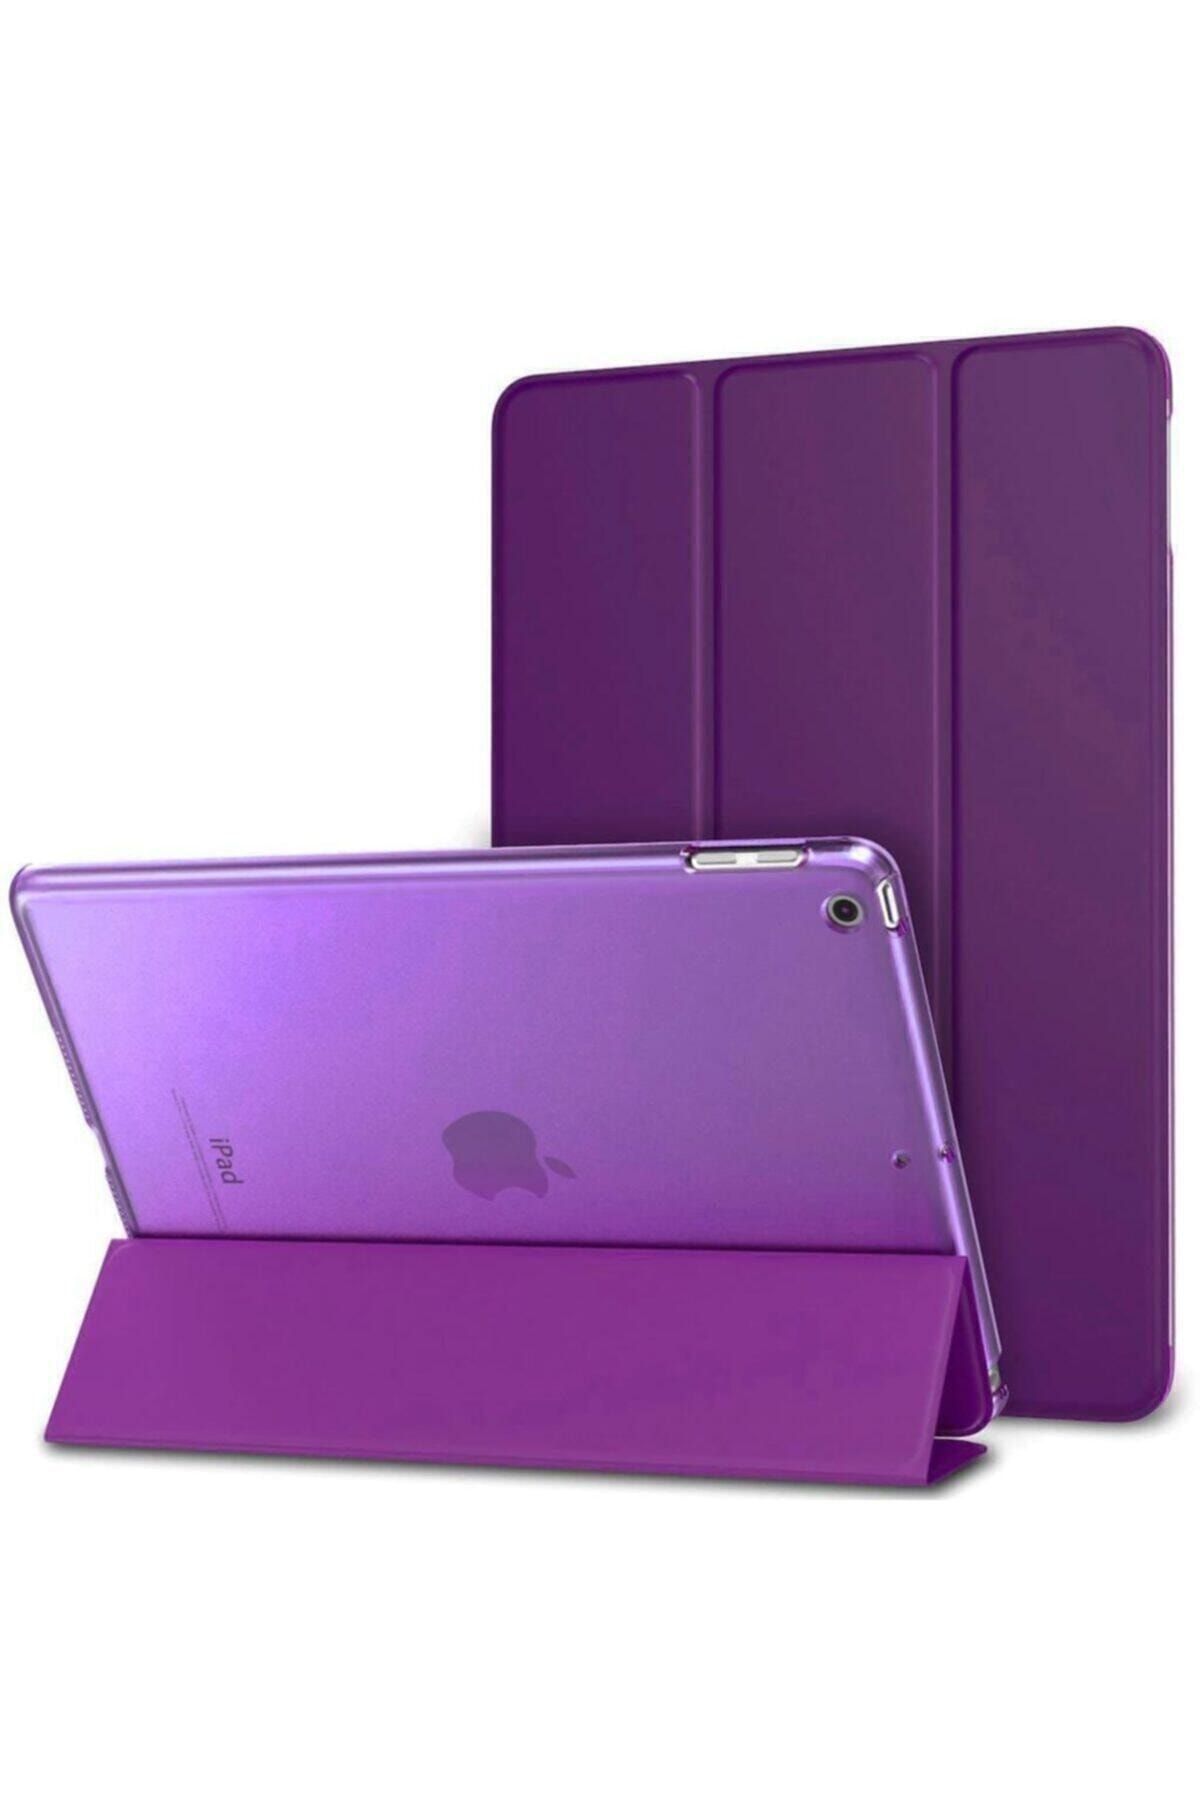 Teknoloji Gelsin Apple Ipad 8. Nesil 10.2 Inç Stand Tablet Flip Standlı Akıllı Kılıf Smart Cover 10.2" - Mor -